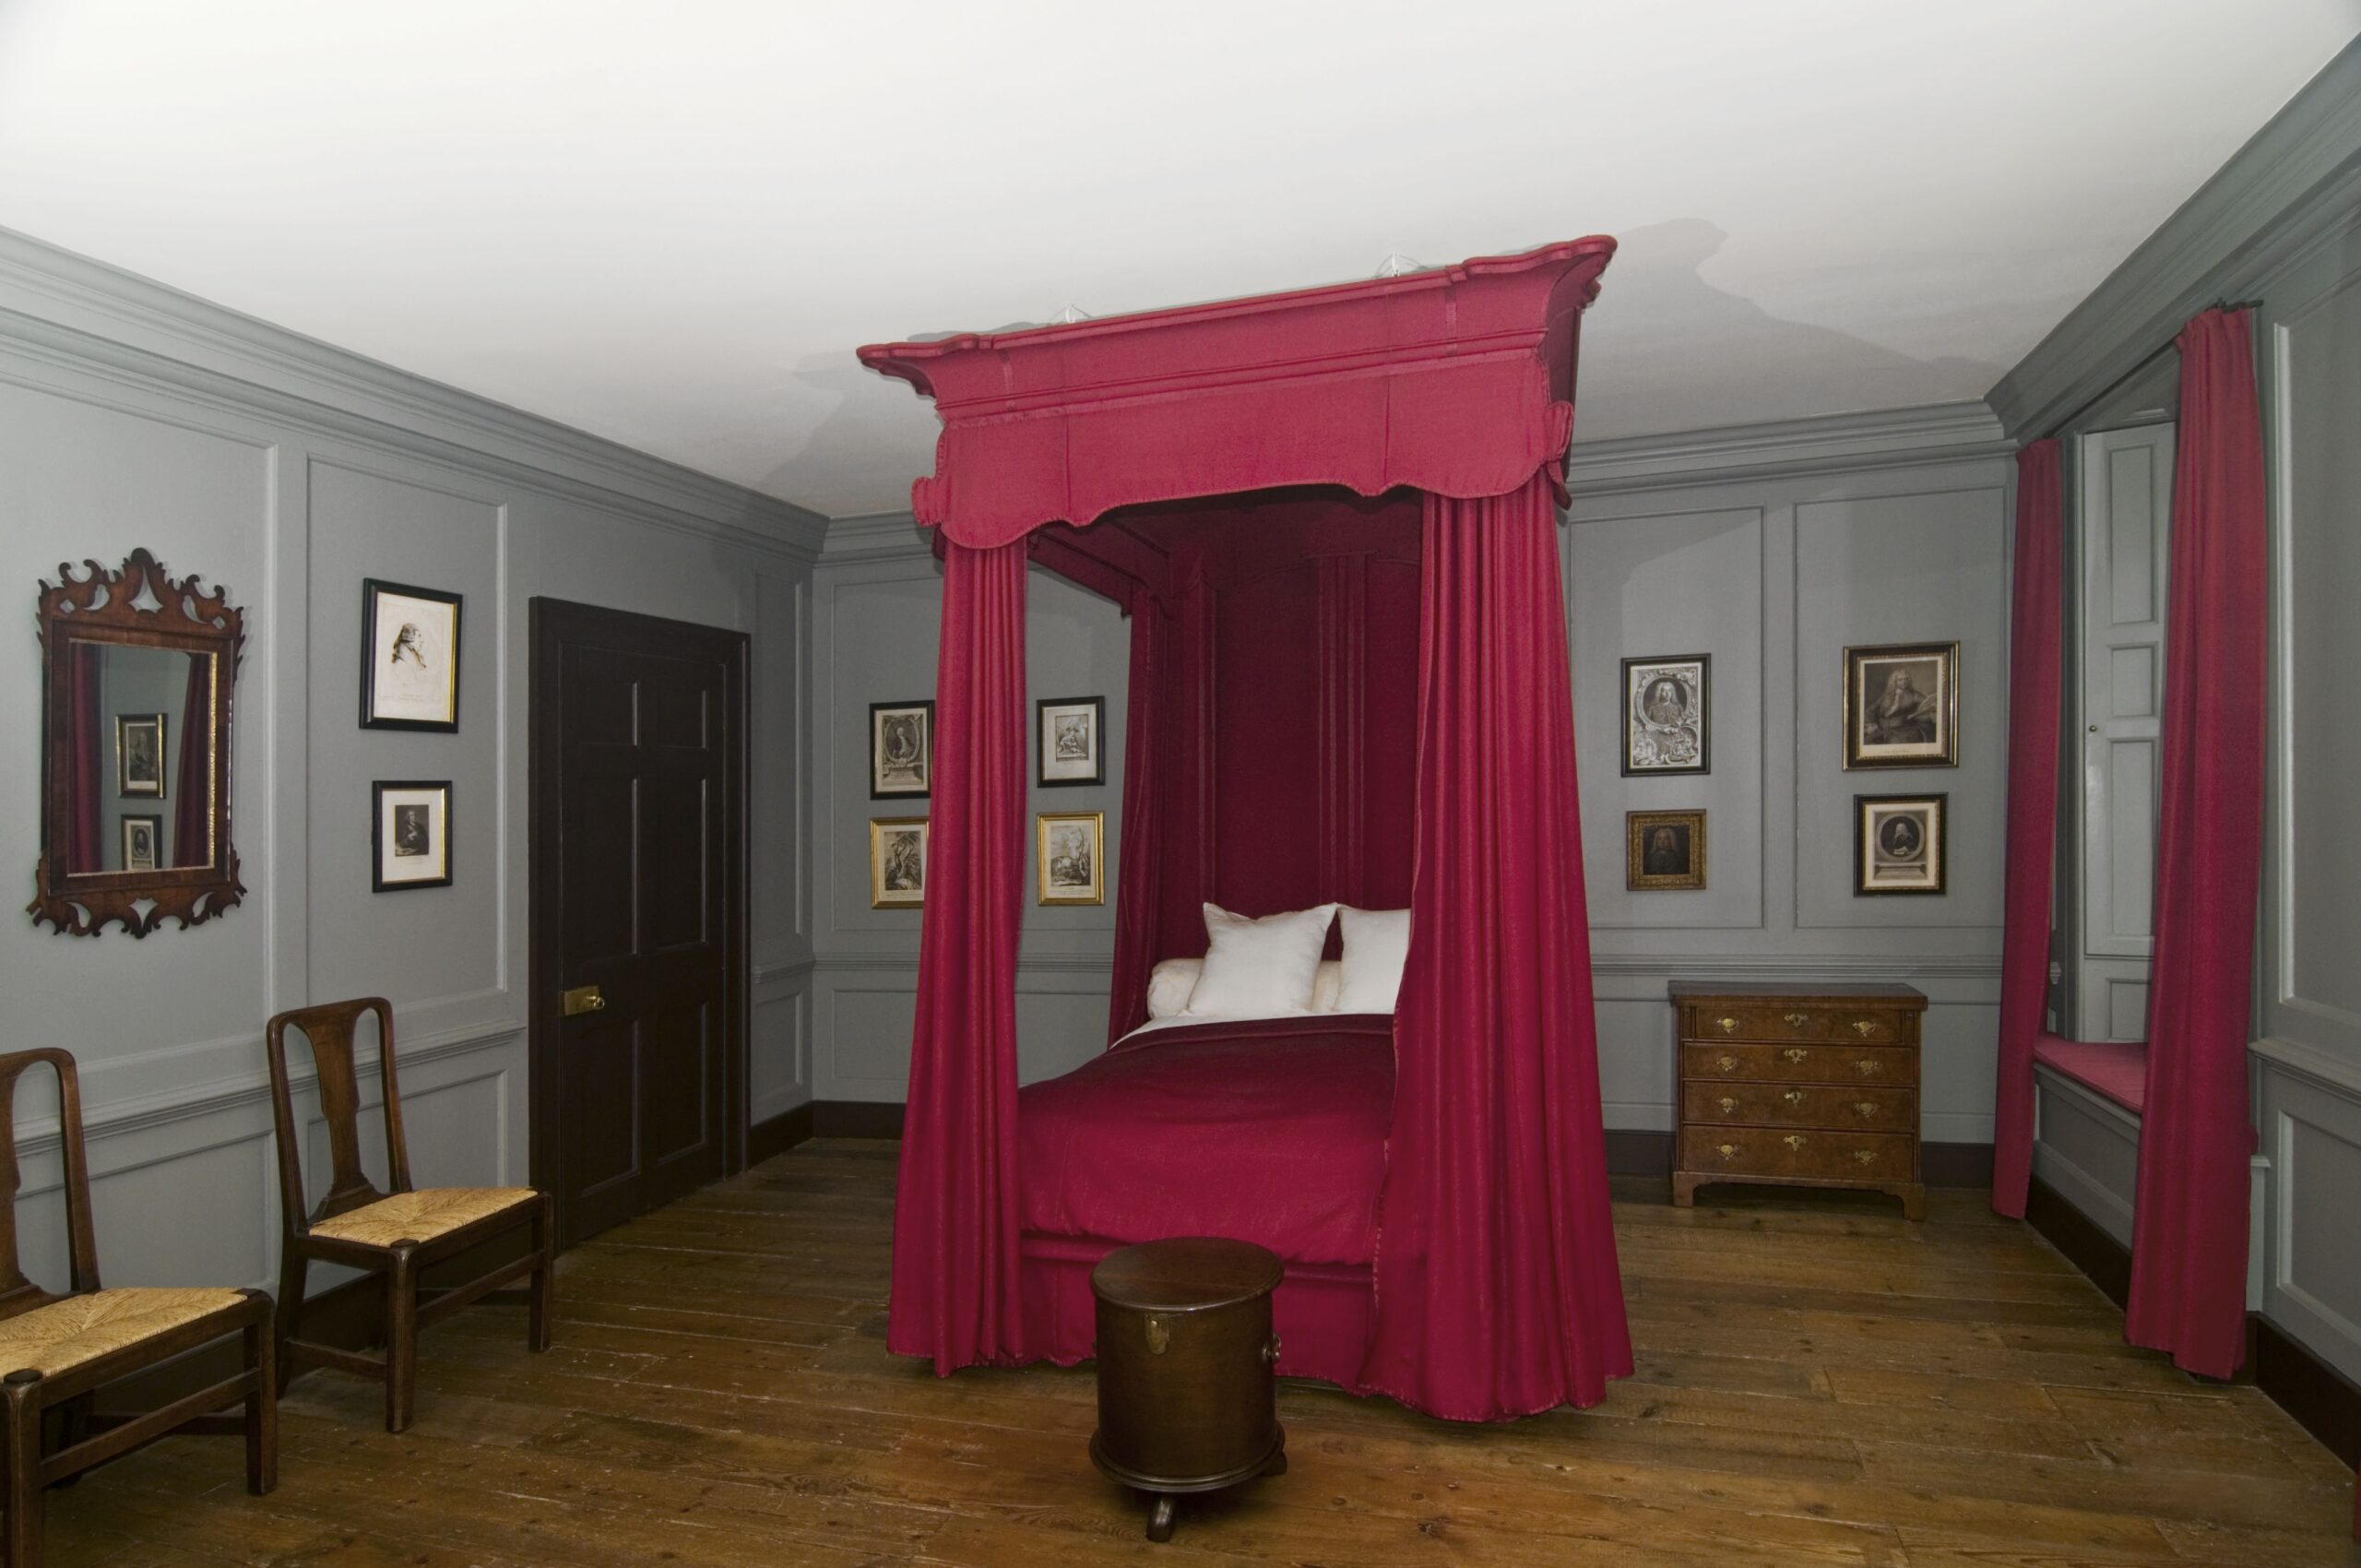 Handel's bedroom